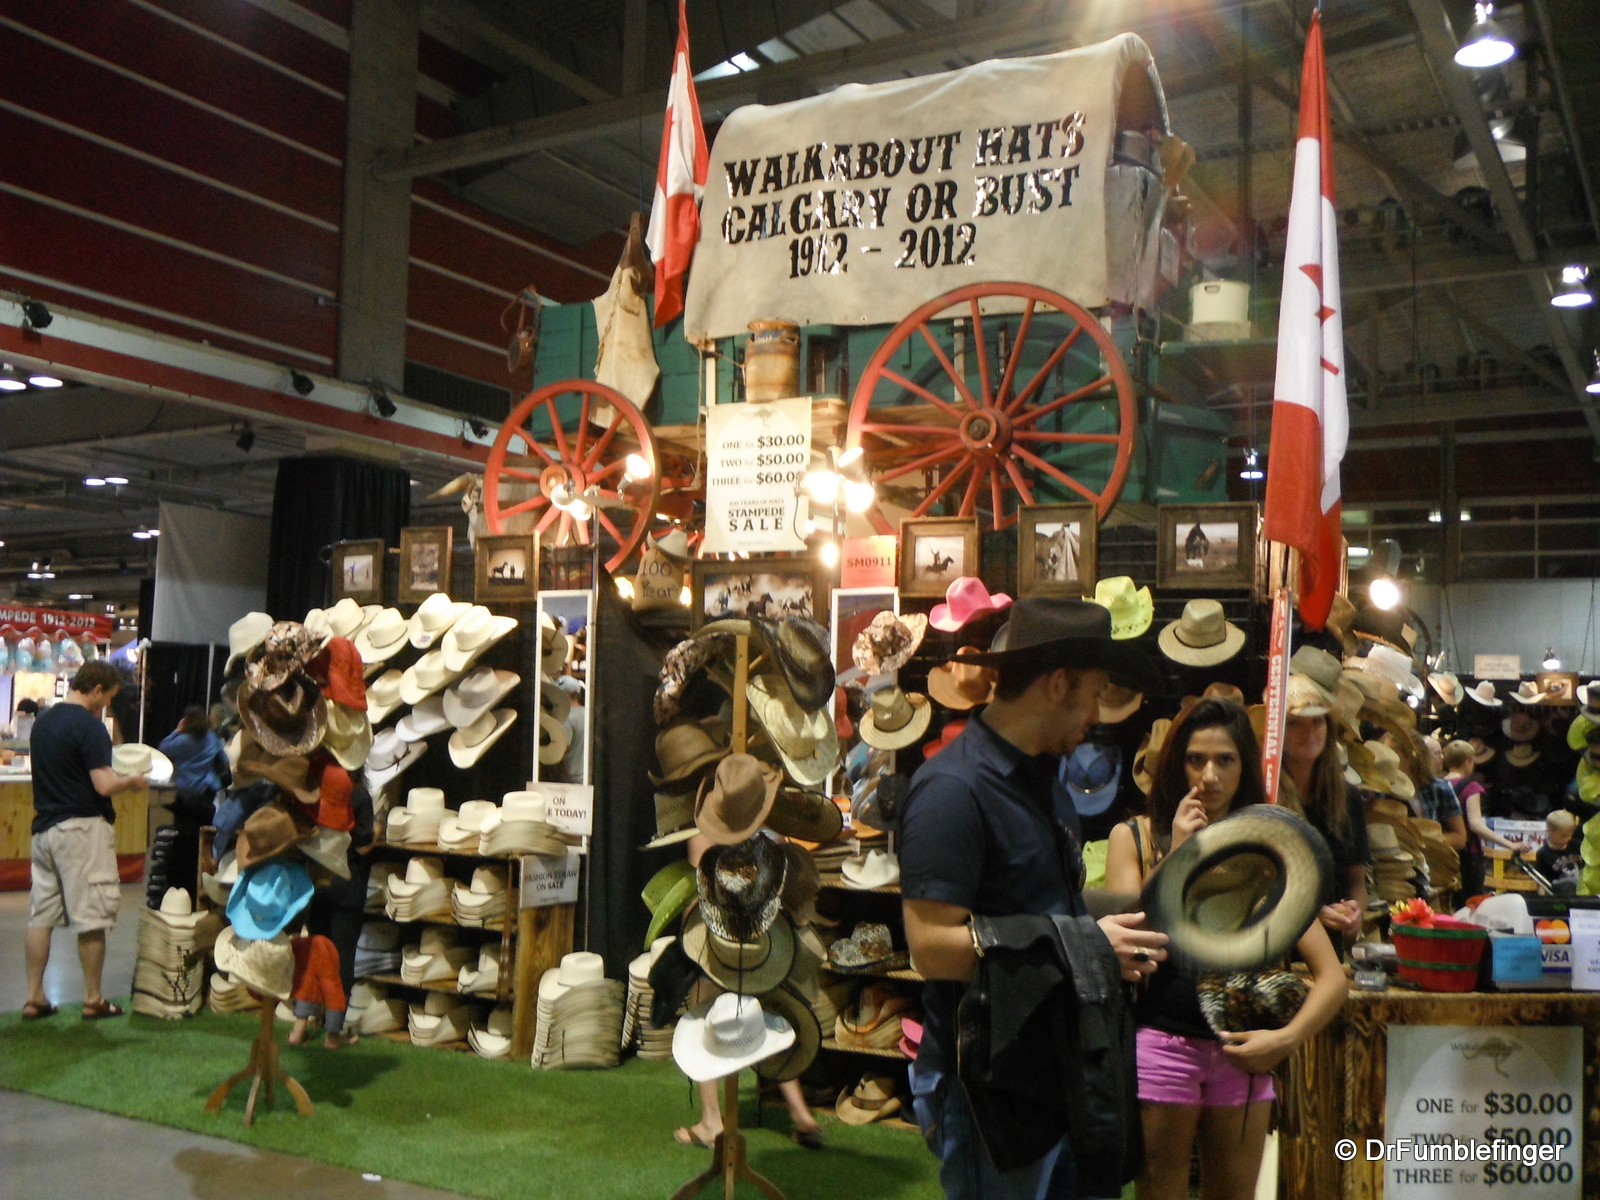 Hat vendor, Calgary exhibition